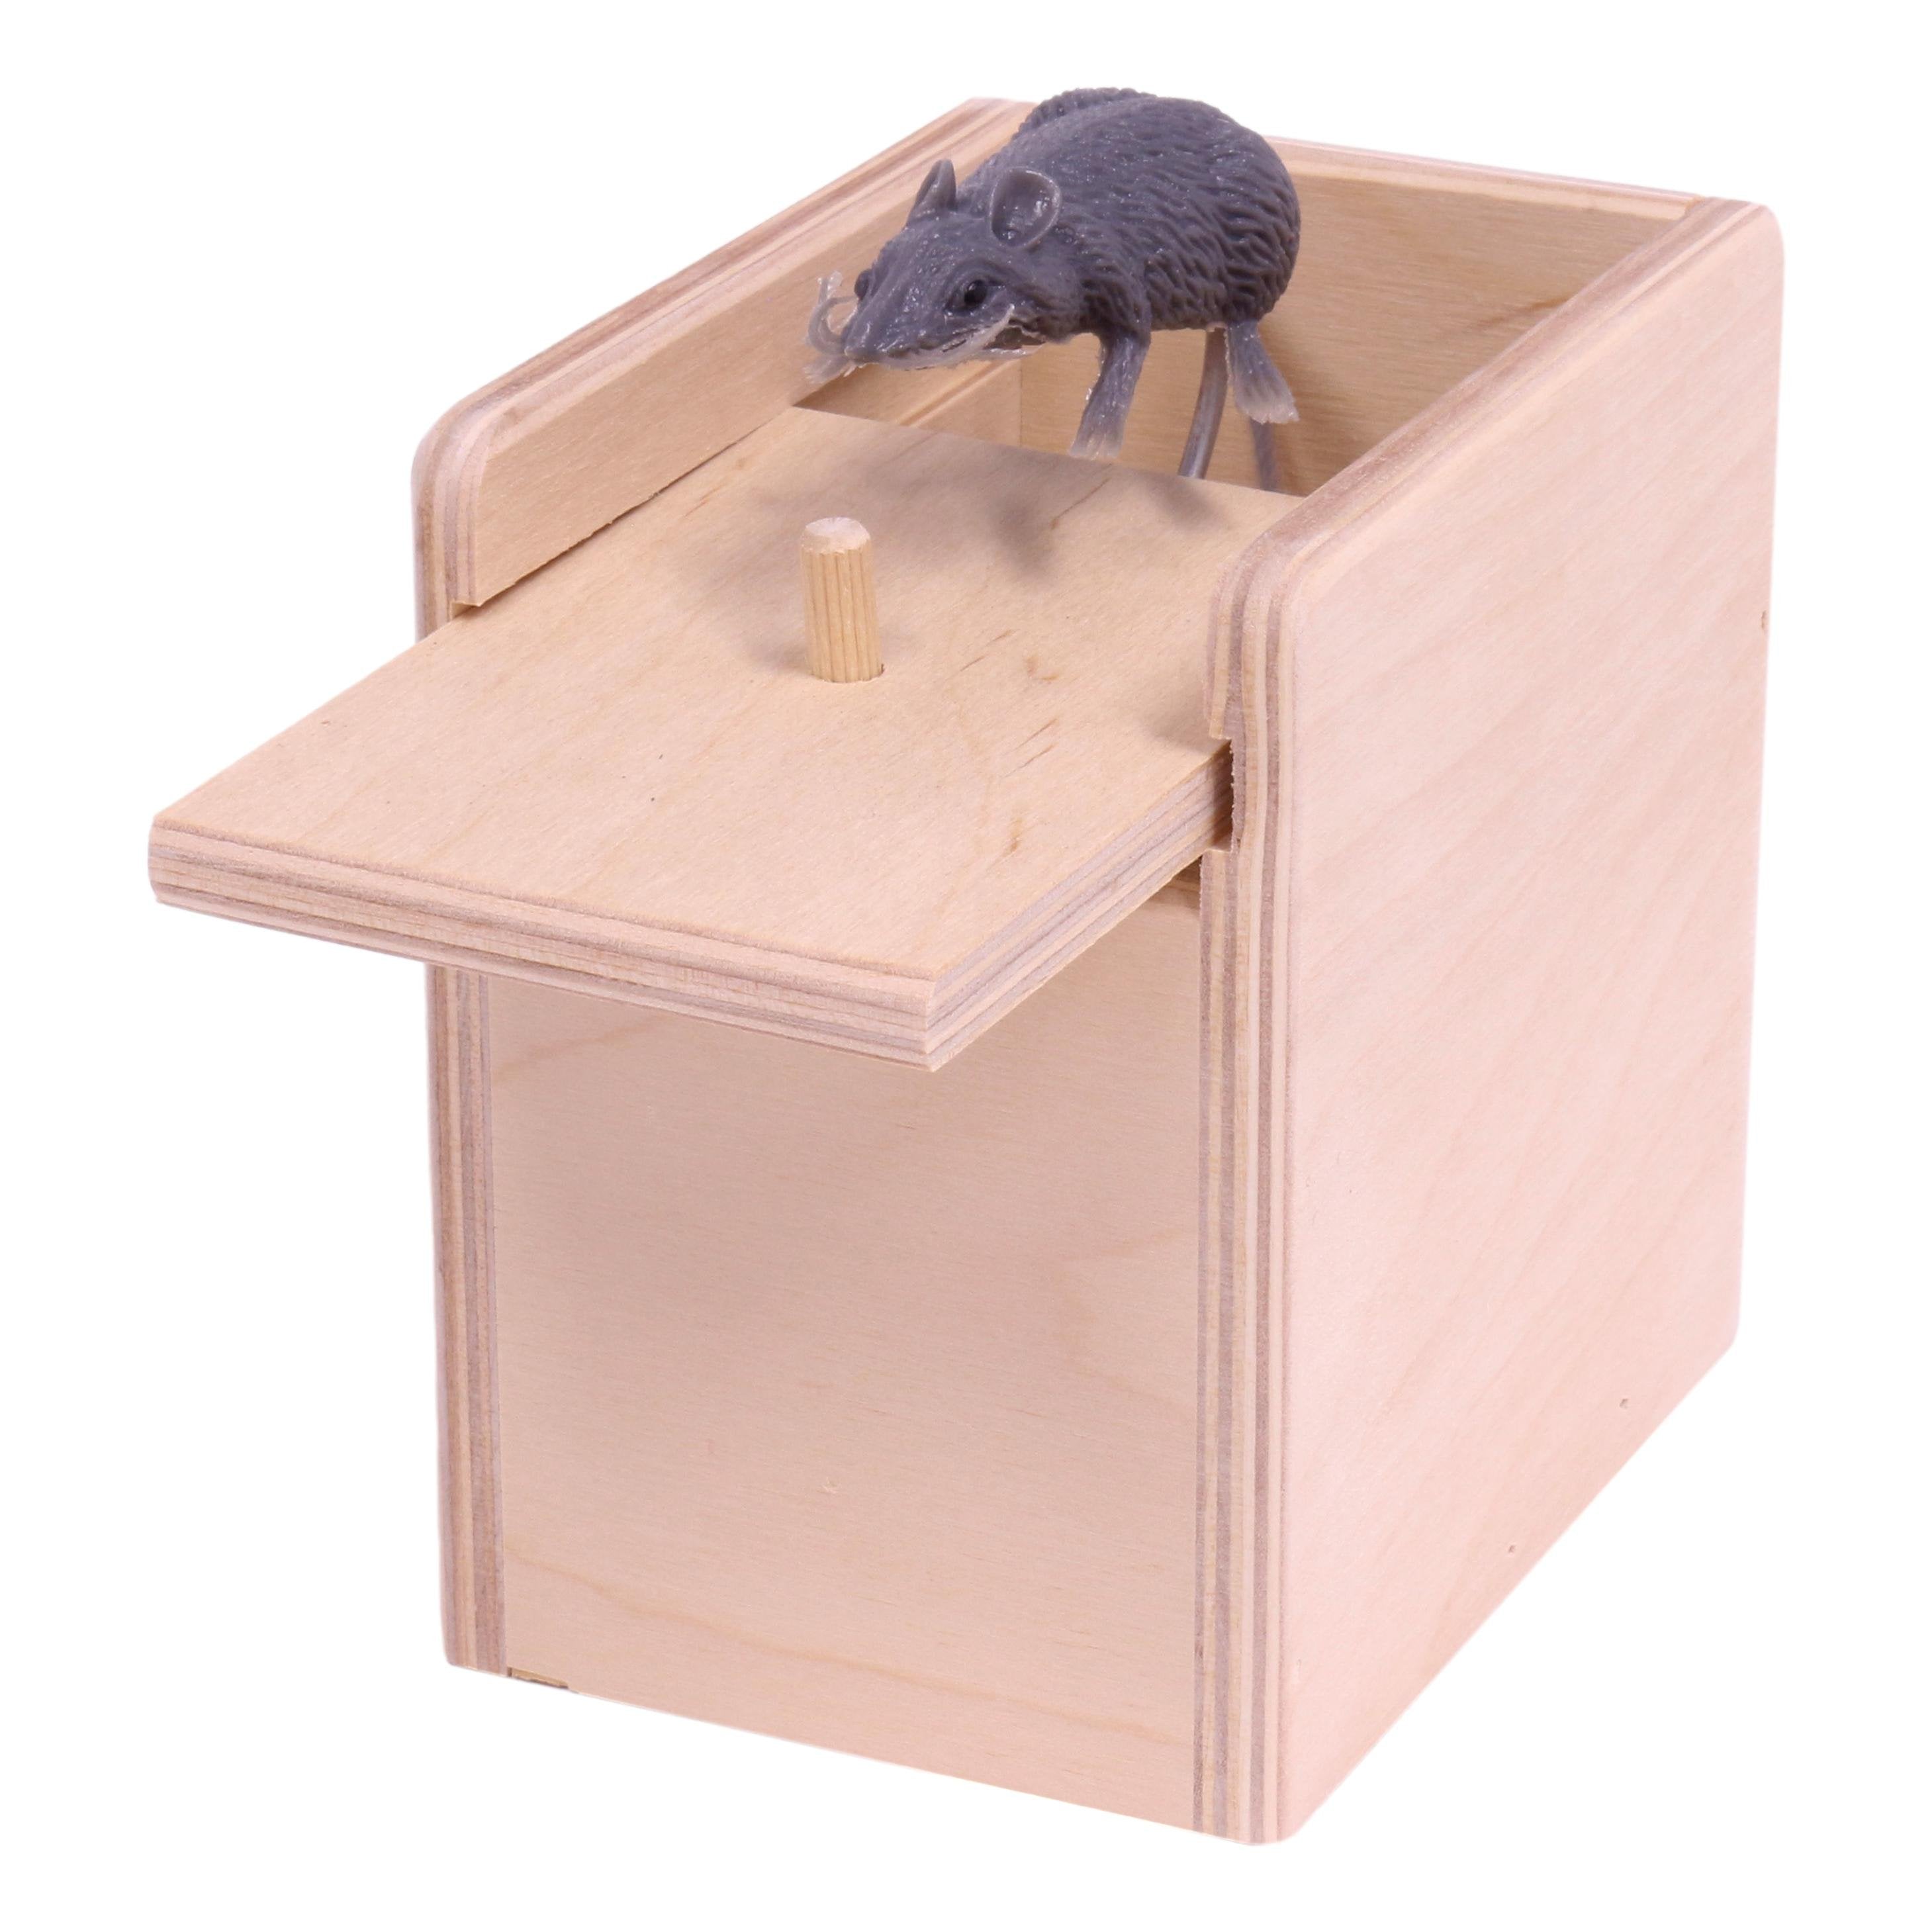 Wooden Surprise Prank Mouse Box –